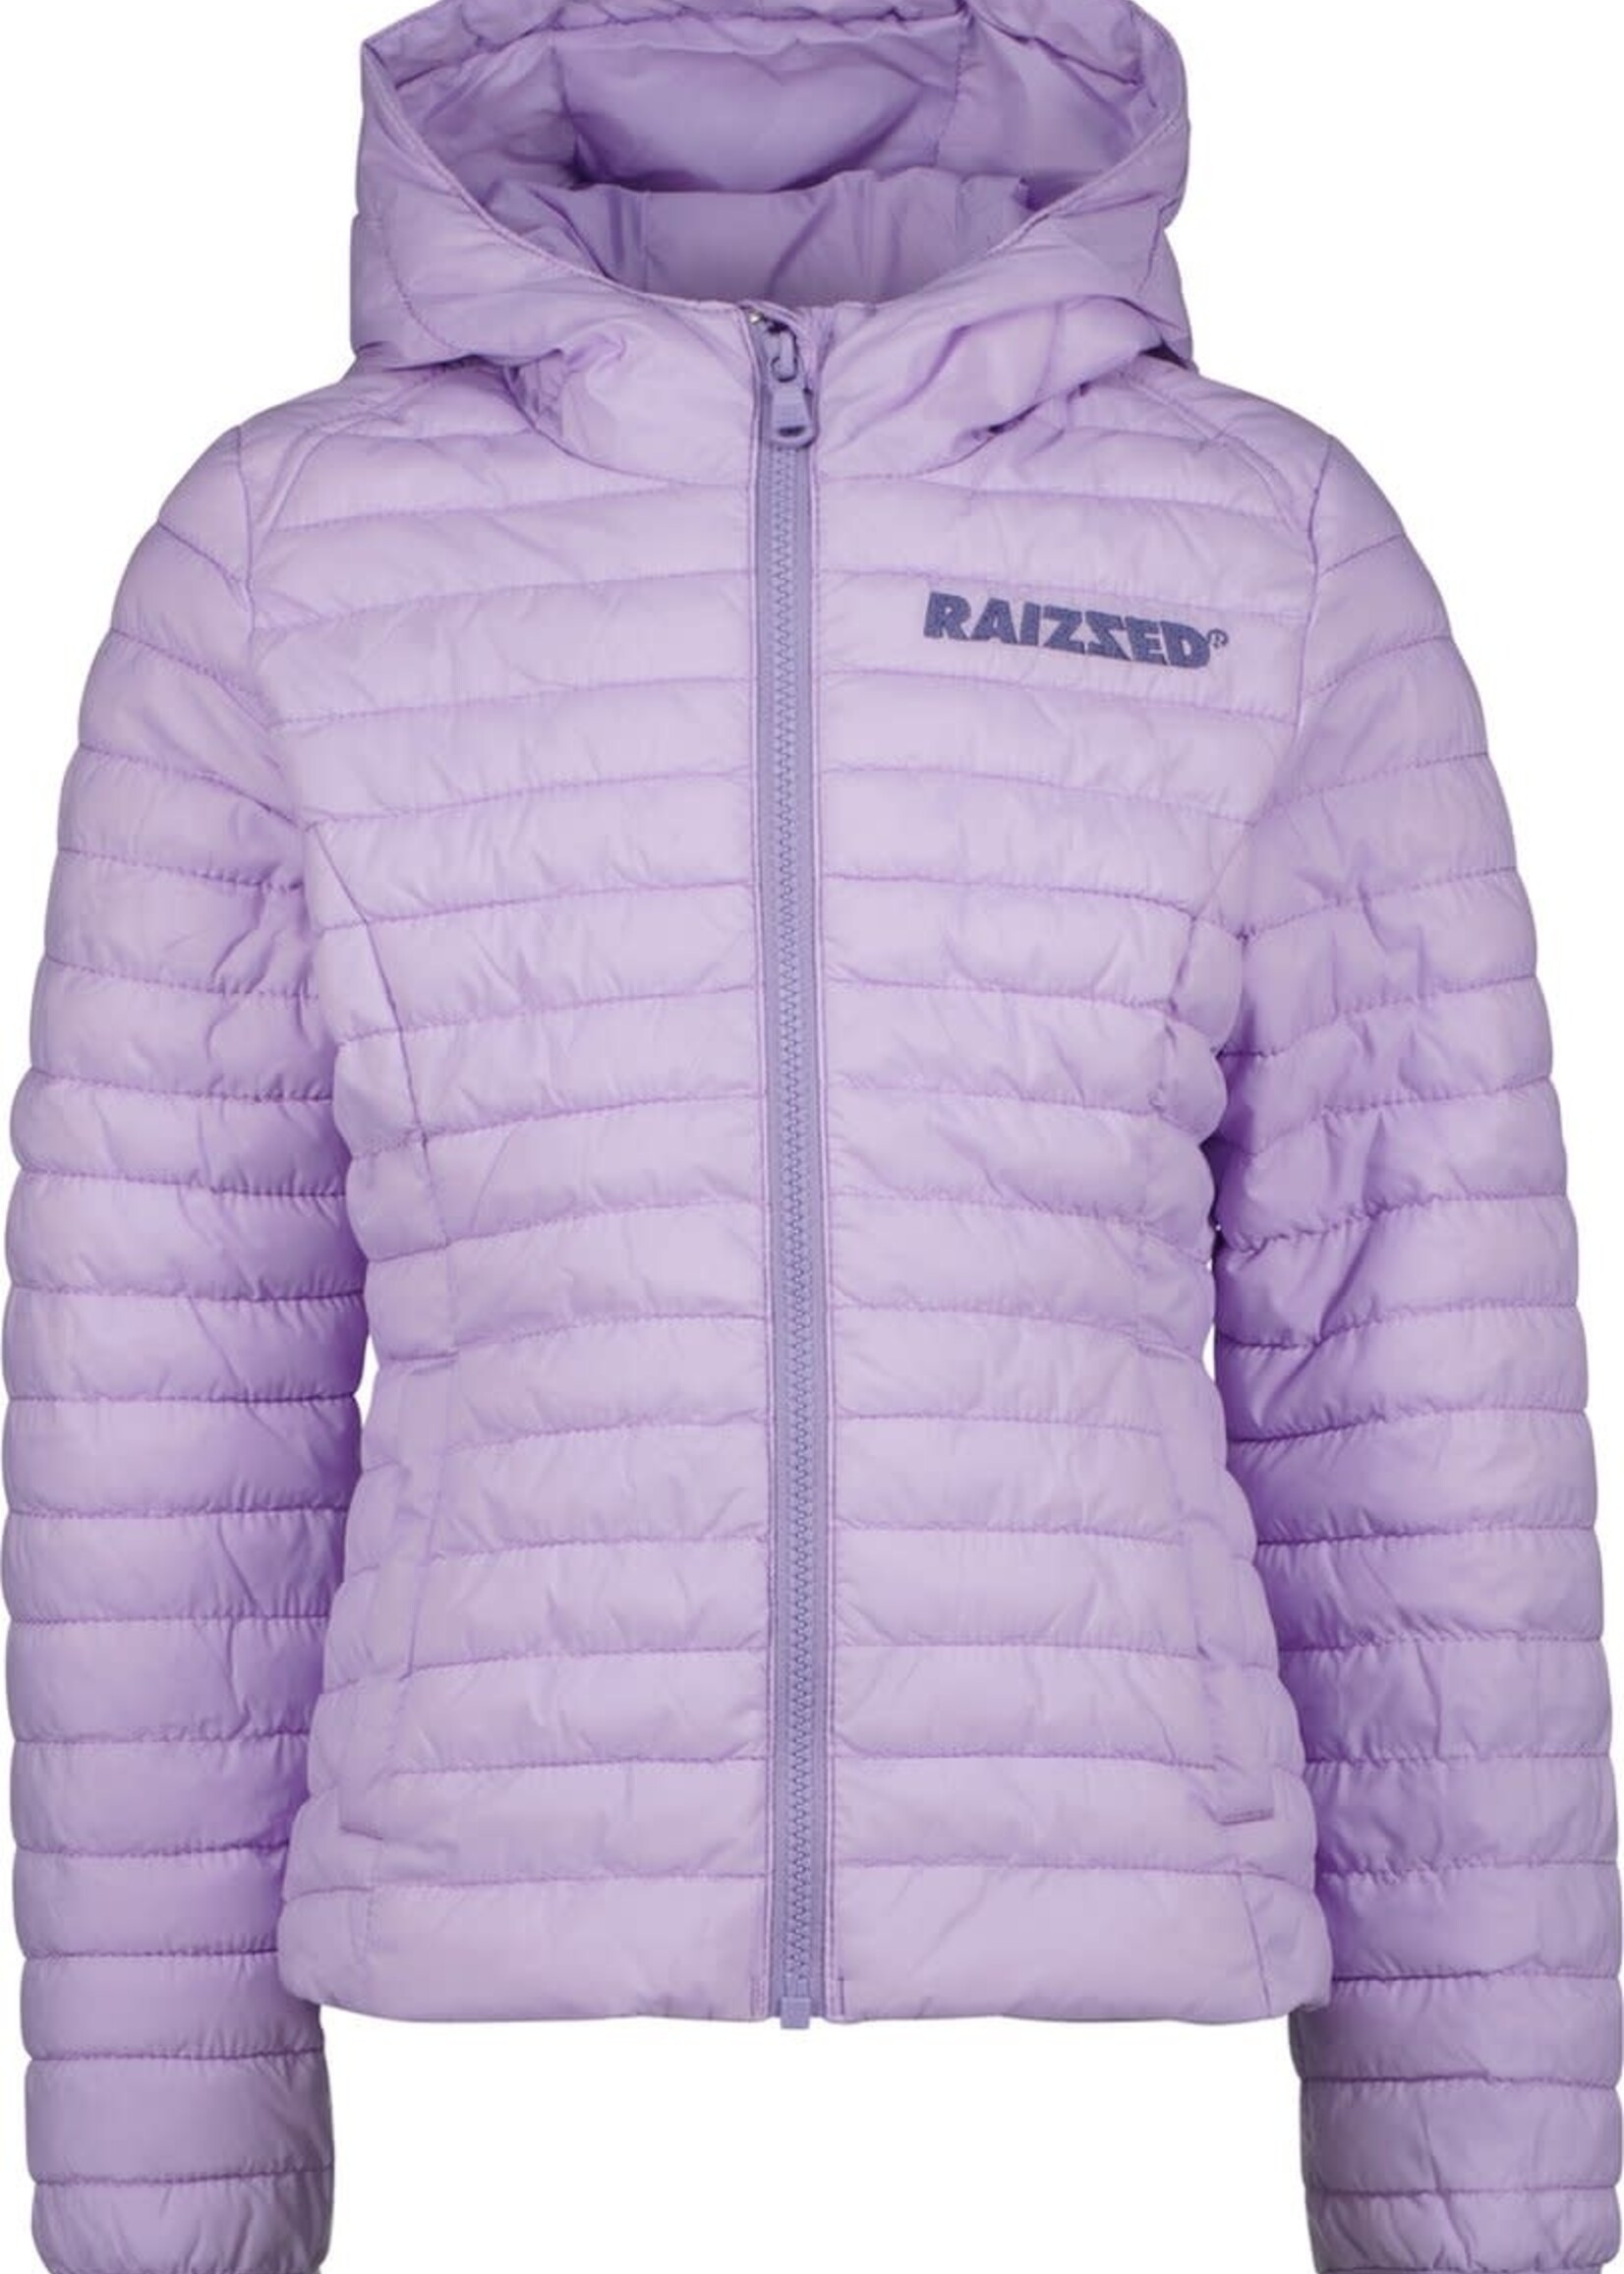 Cheyenne jacket - Lavender